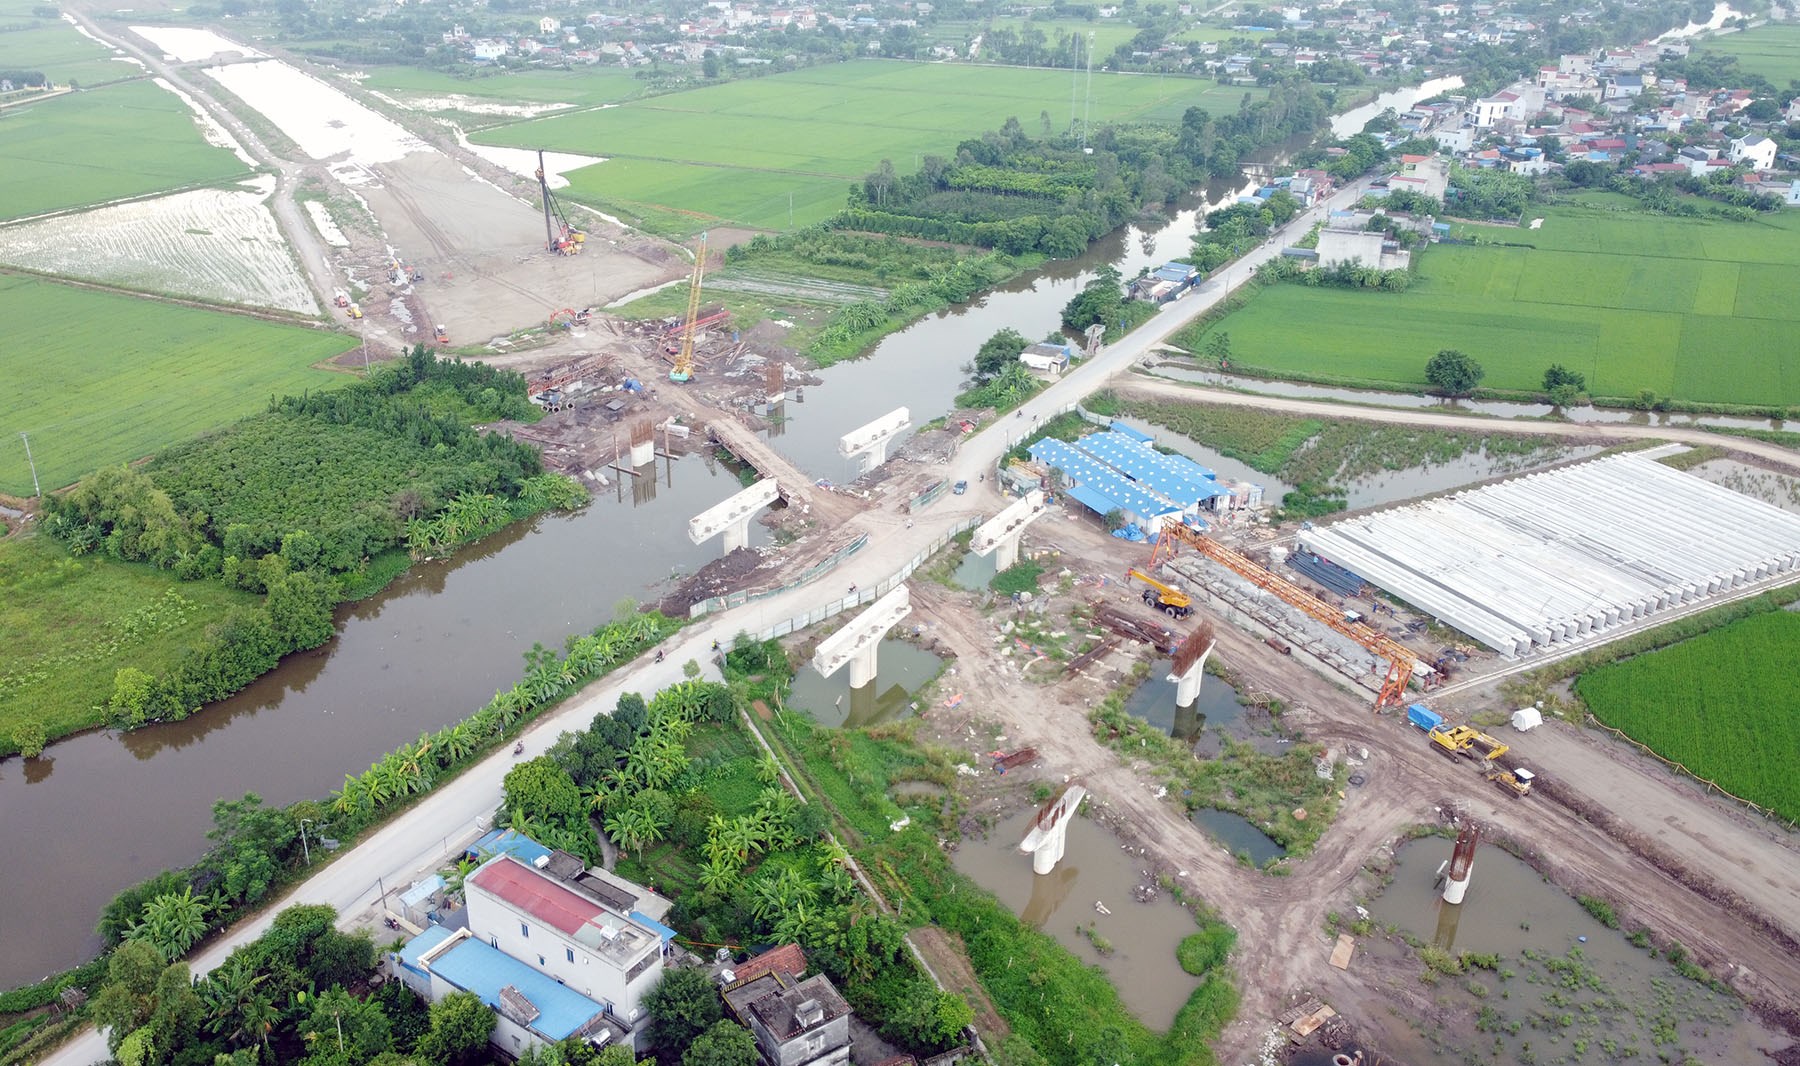 Hình ảnh cầu vượt sông Châu Thành trên tuyến đường Nam Định - Lạc Quần - Đường bộ ven biển đang xây dựng